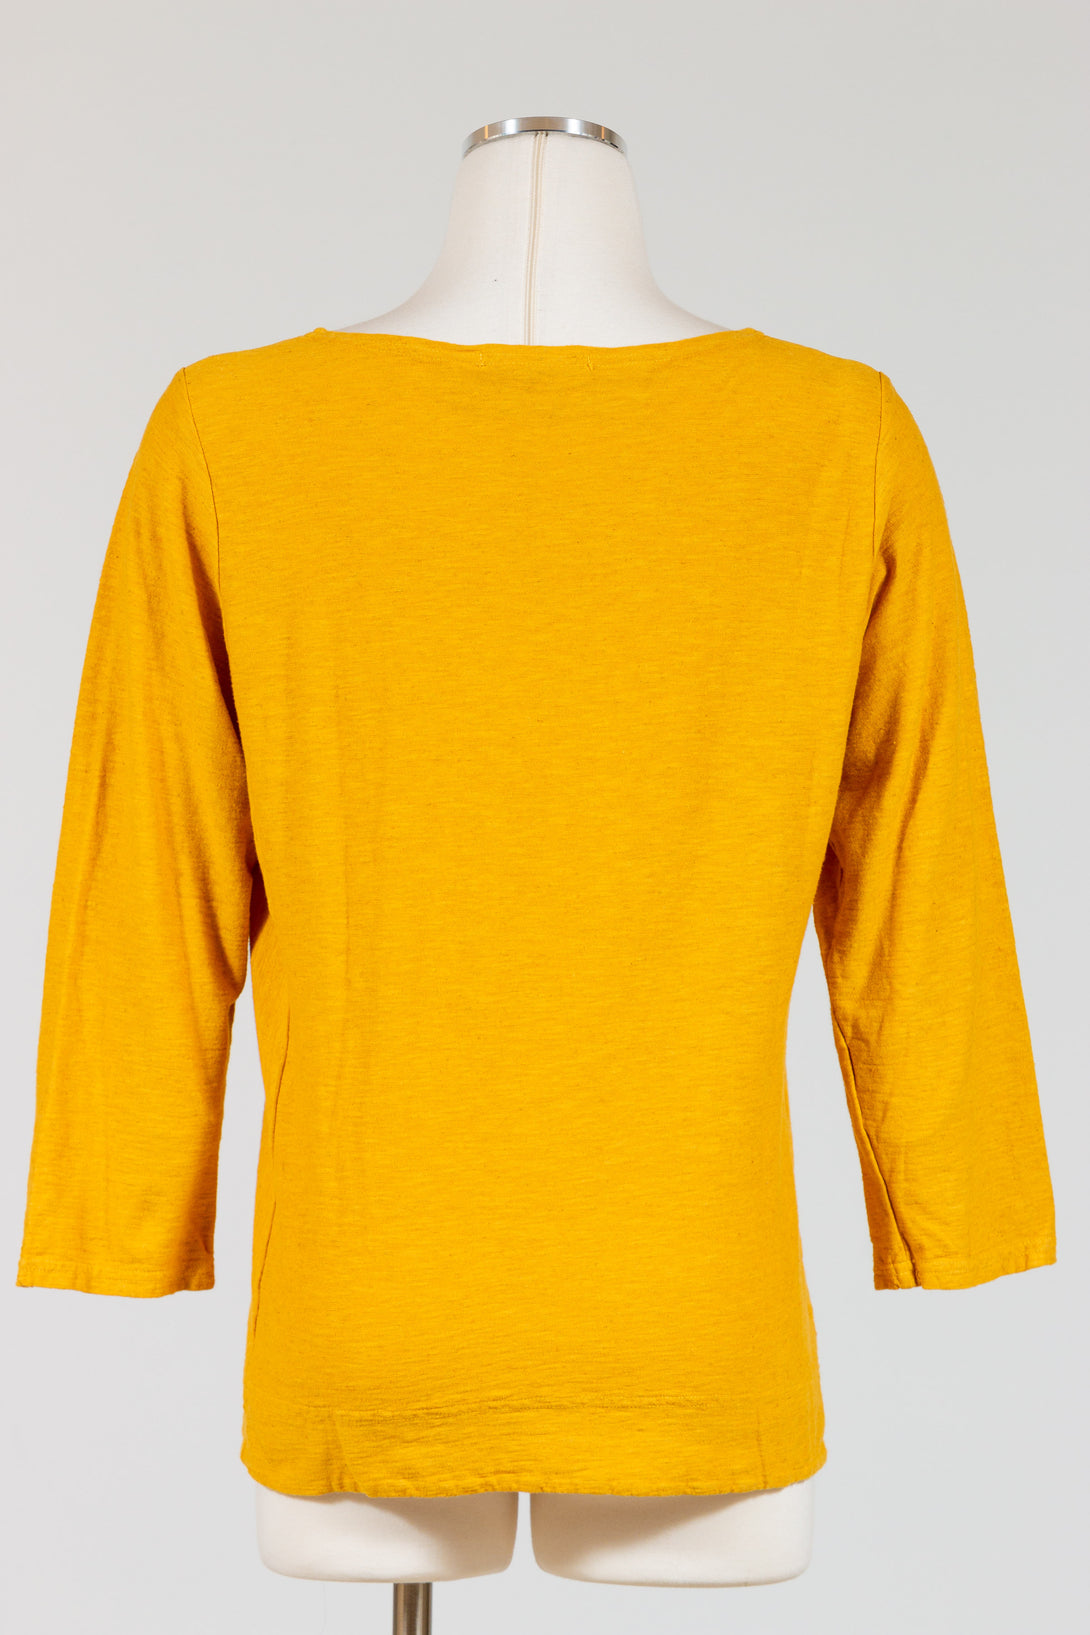 CutLoose-SidePanel-Top-Cotton-Linen-Knit-Butternut-Yellow